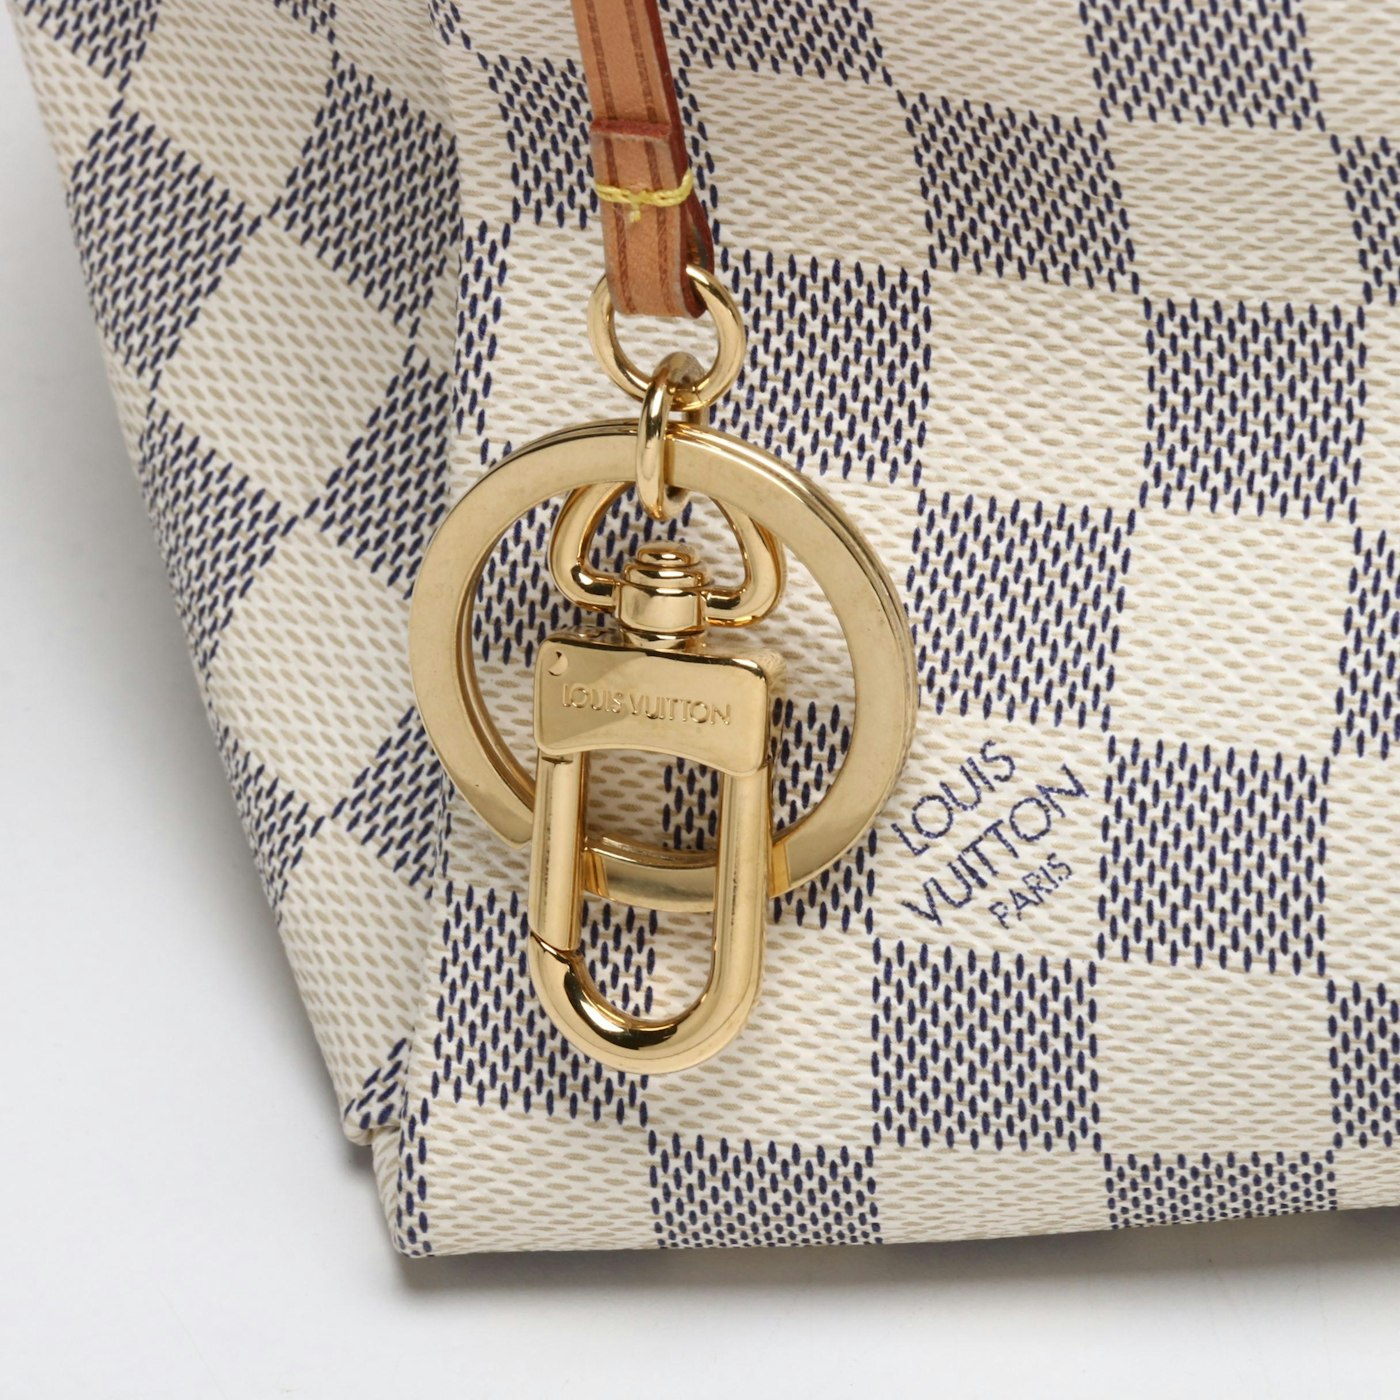 Louis Vuitton Paris Damier Azur Canvas Artsy Hobo Bag with Leather Handle | EBTH